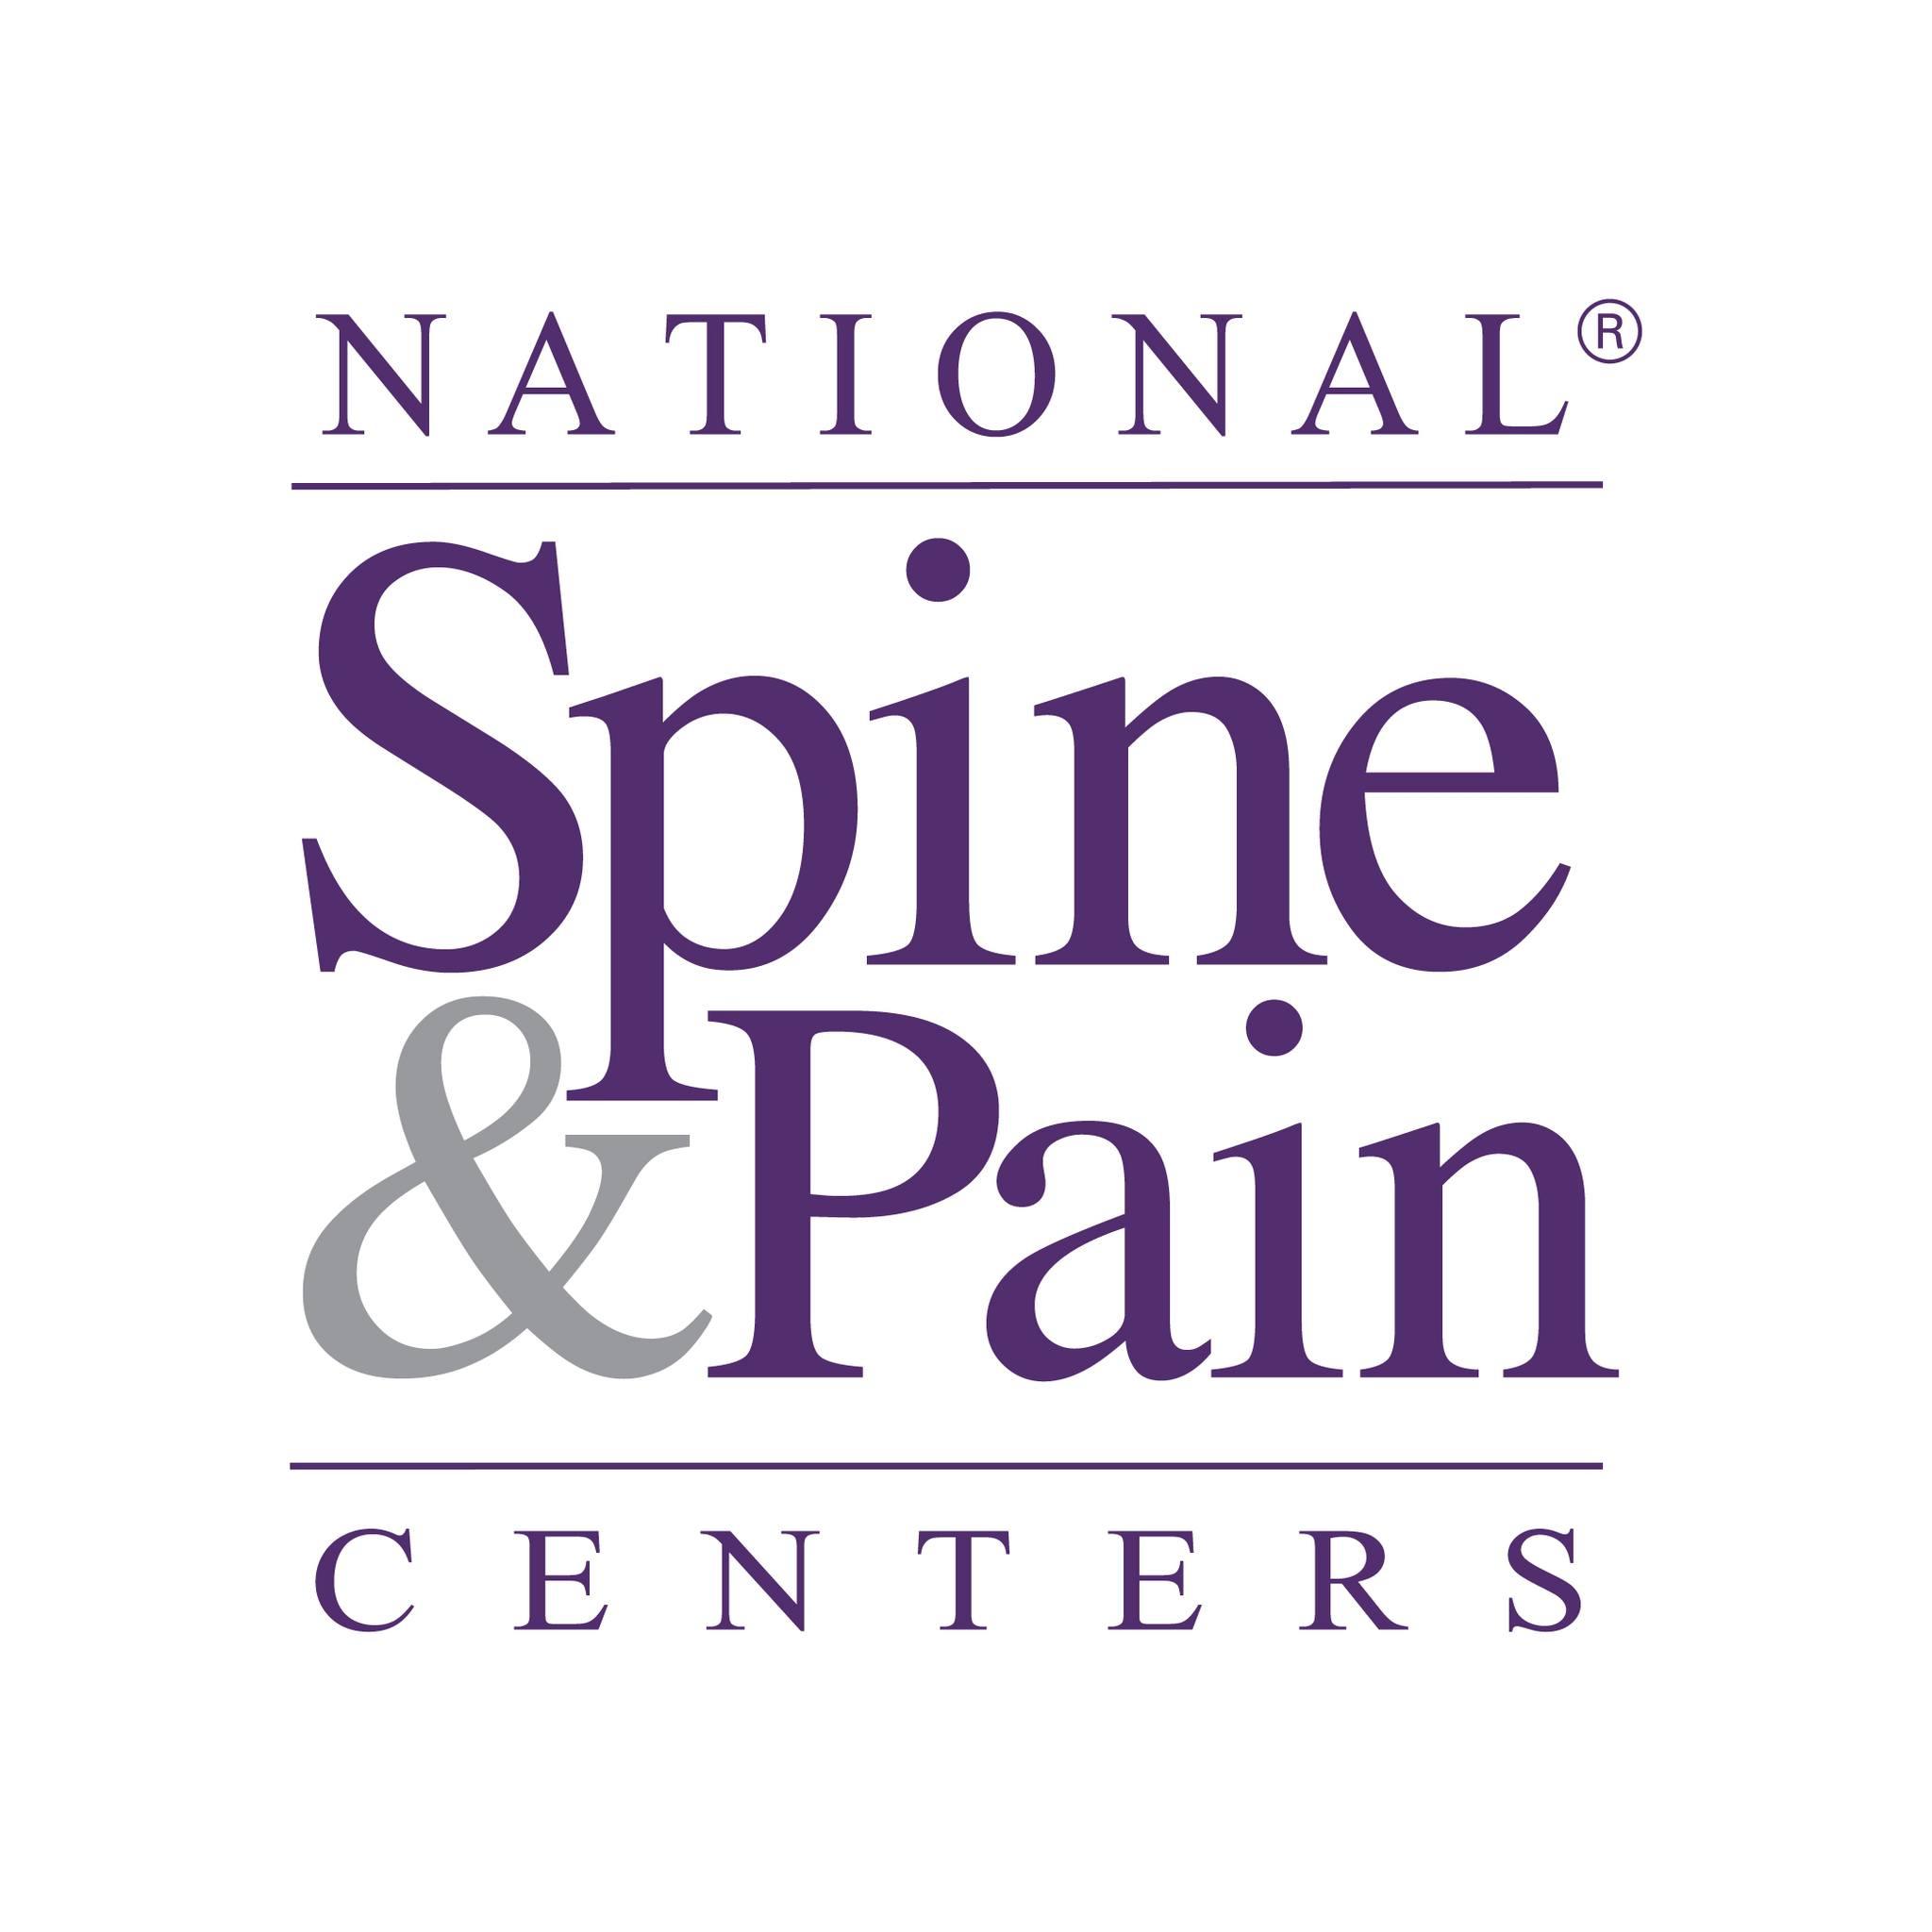 National Spine & Pain Centers - Aldie Aldie (703)348-5060